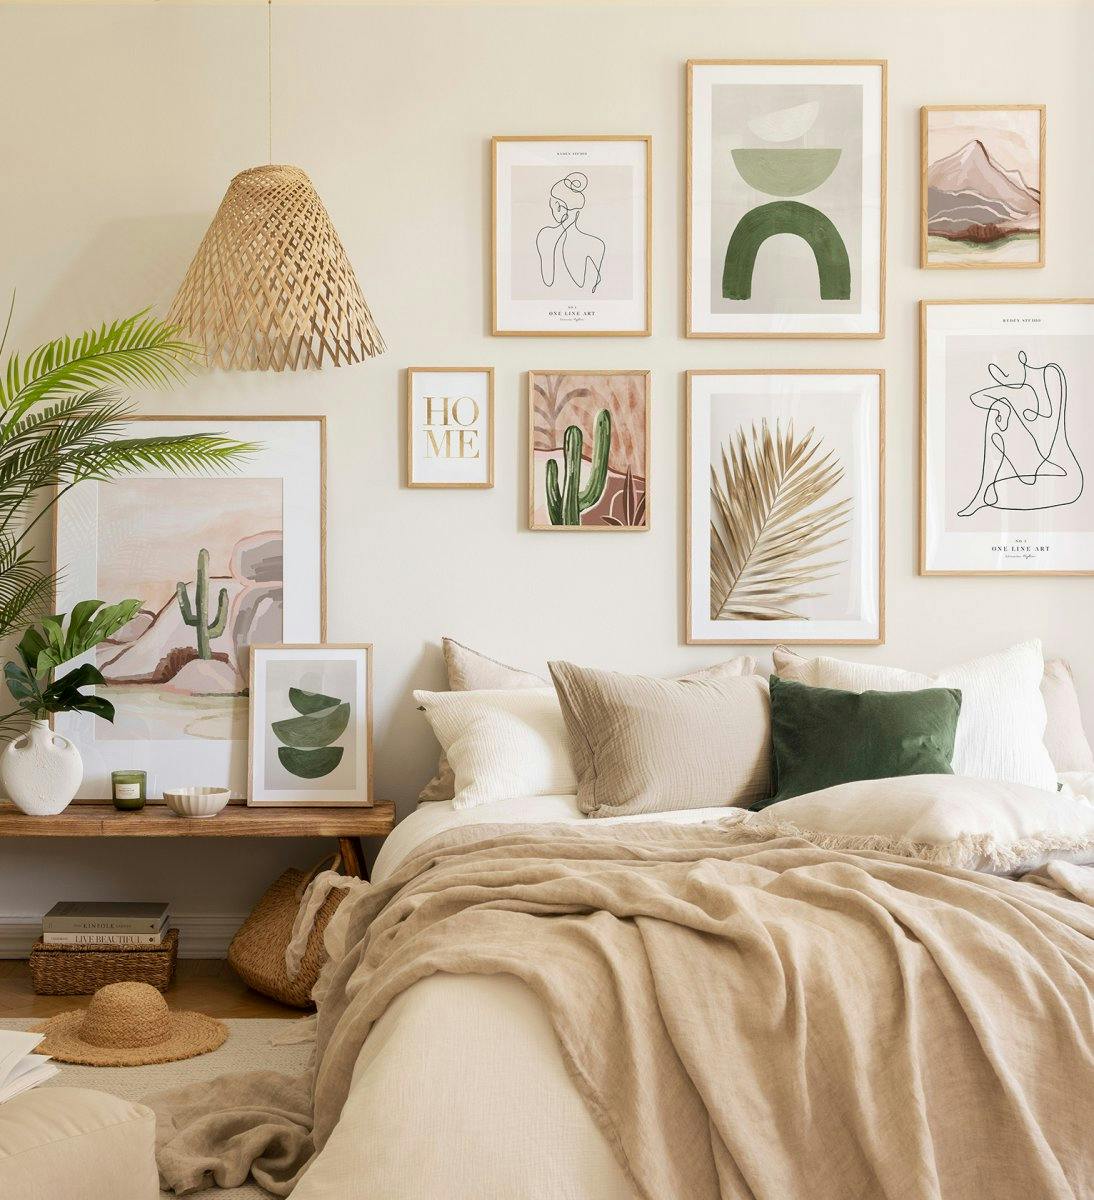 Eikenlijst fotowand met rustige, zomerse kleuren voor de slaapkamer.